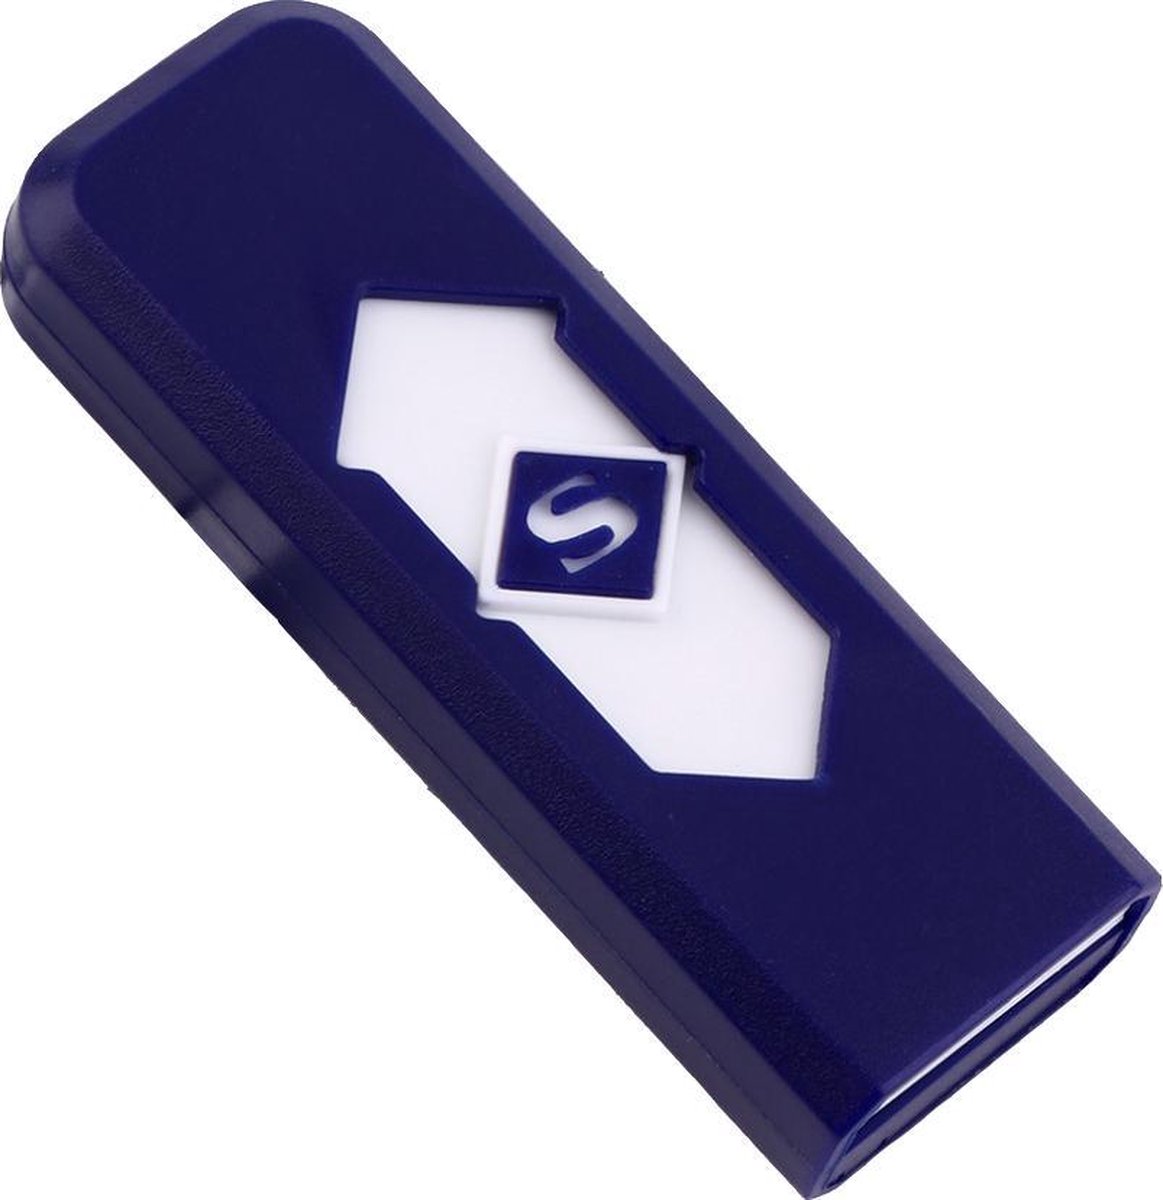 USB Aansteker Blauw - Koopjegadget